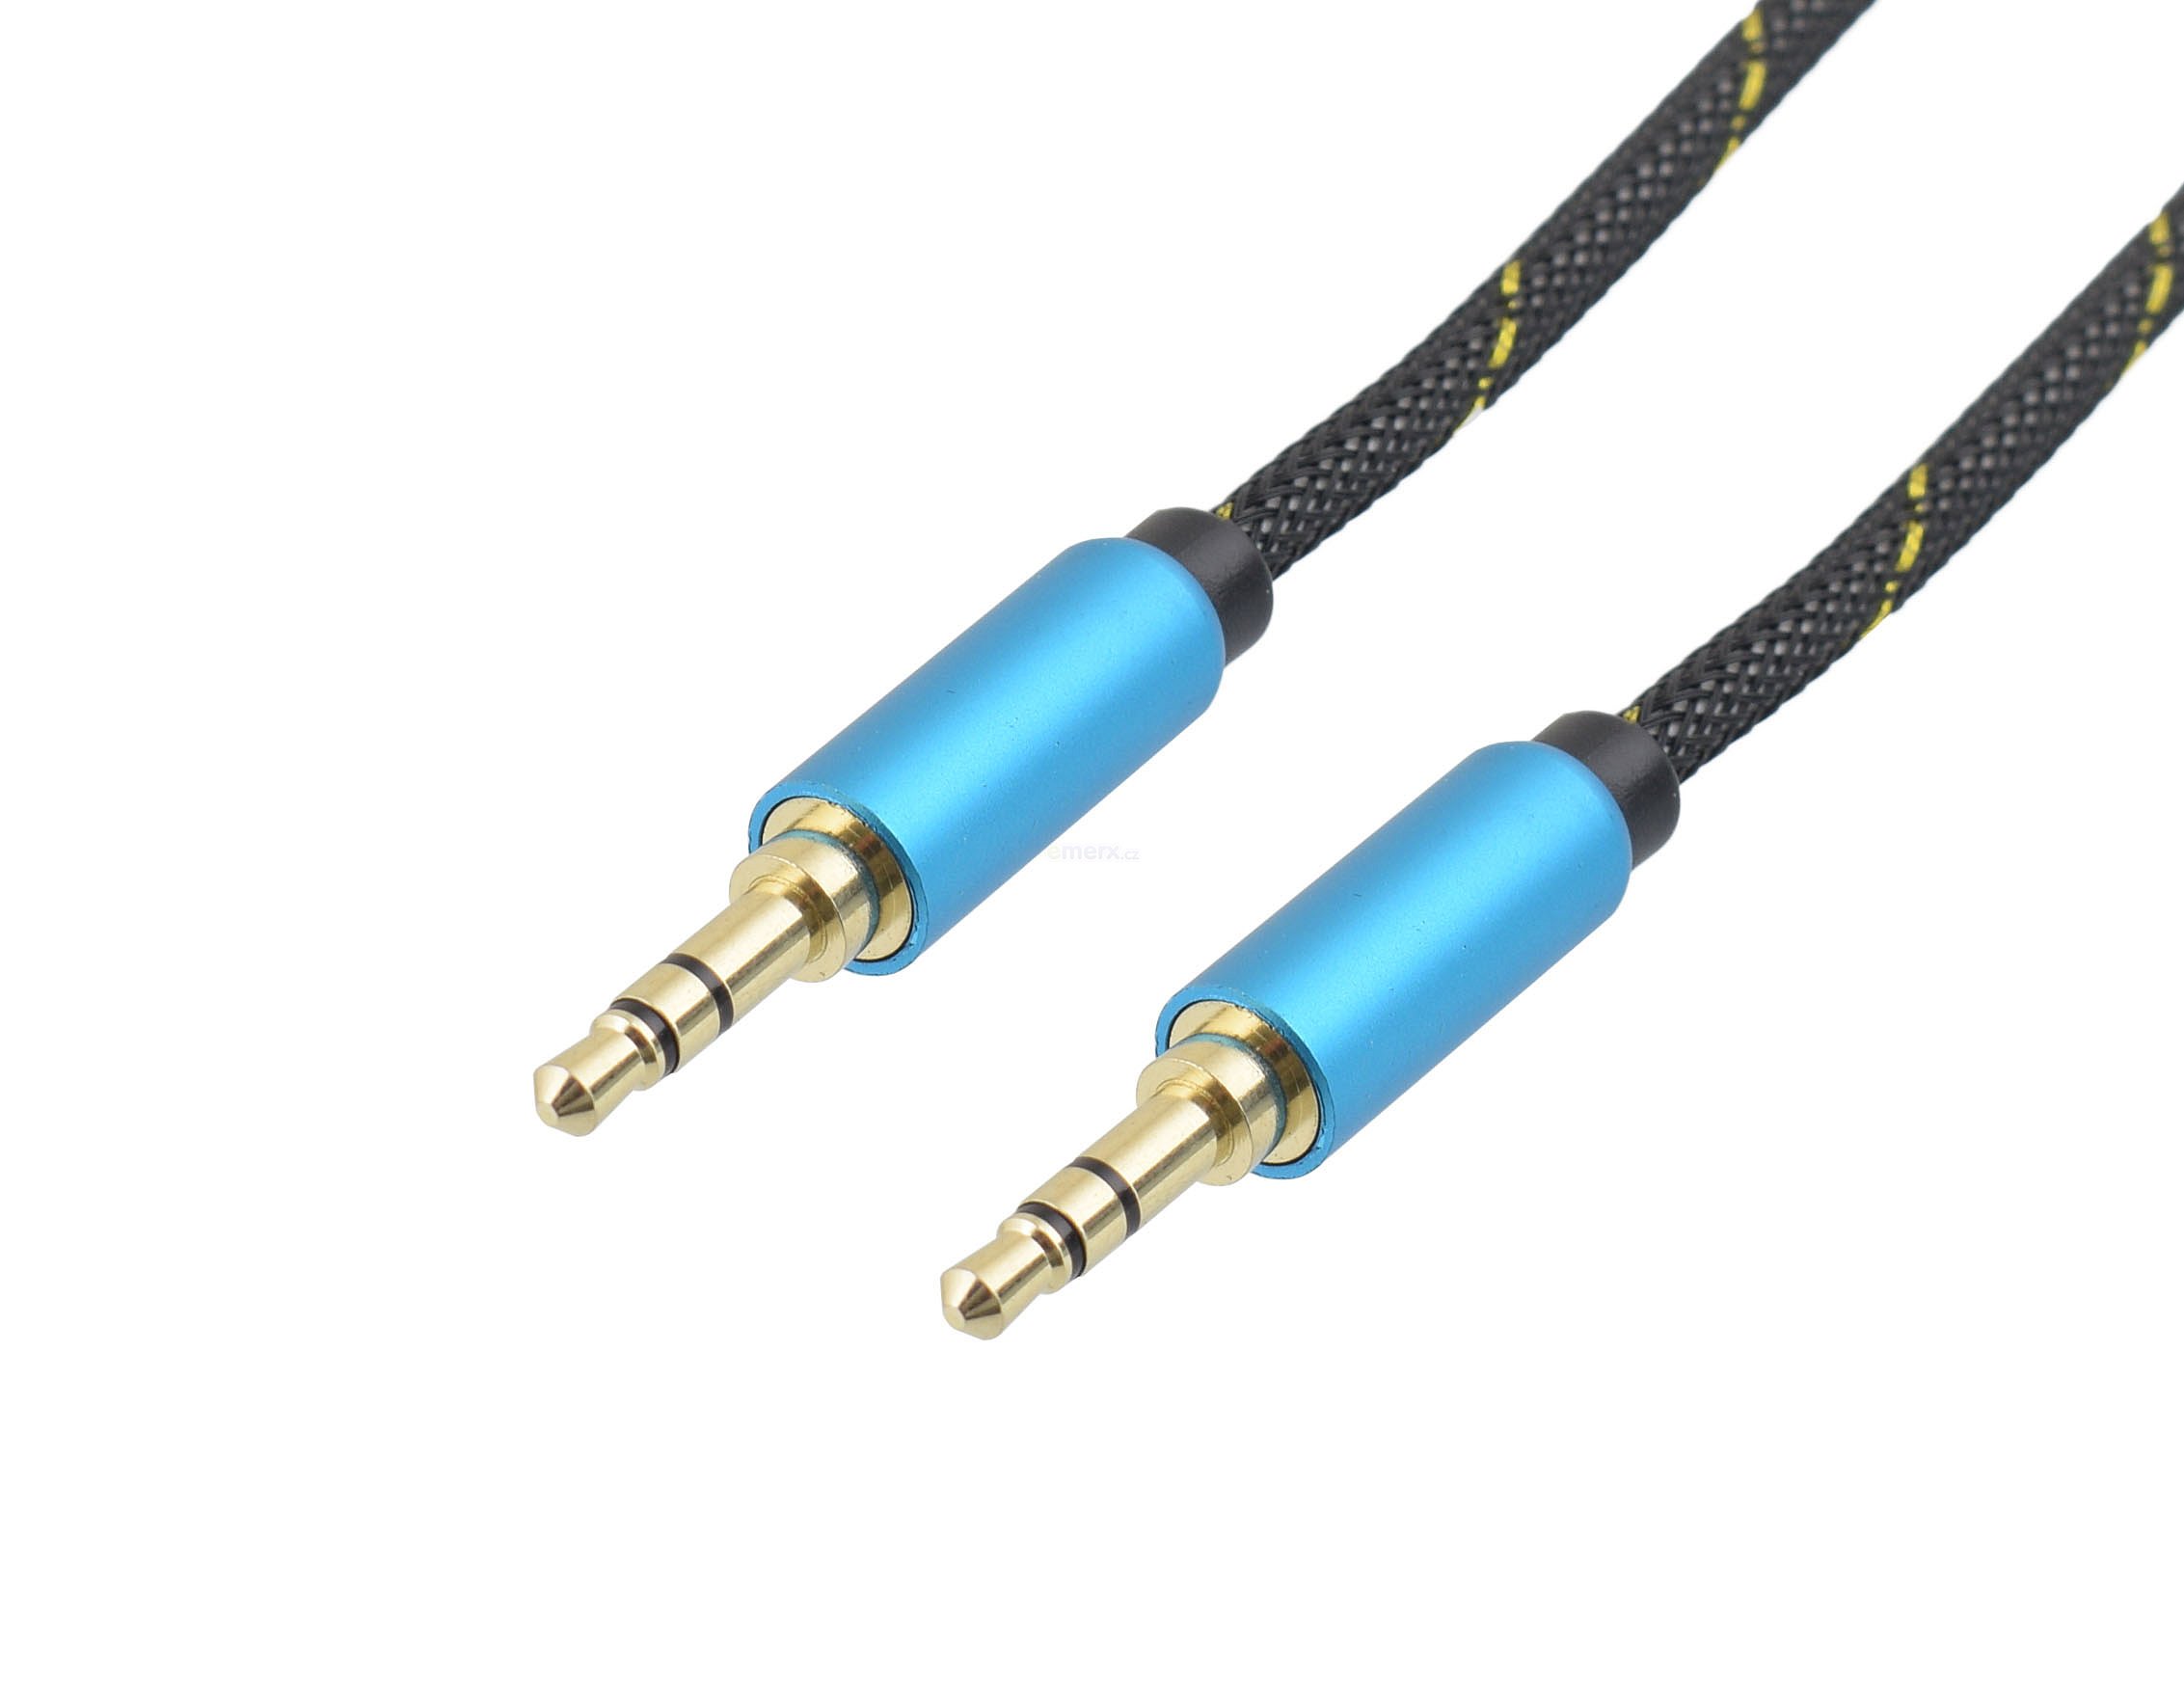 Propojovací audio kabel HQ kabel s textilním opletem a kovovými konektory JACK 3,5mm STEREO vidlice na JACK 3,5mm STEREO vidlice, 2m, zlacený. (HS-701-2)